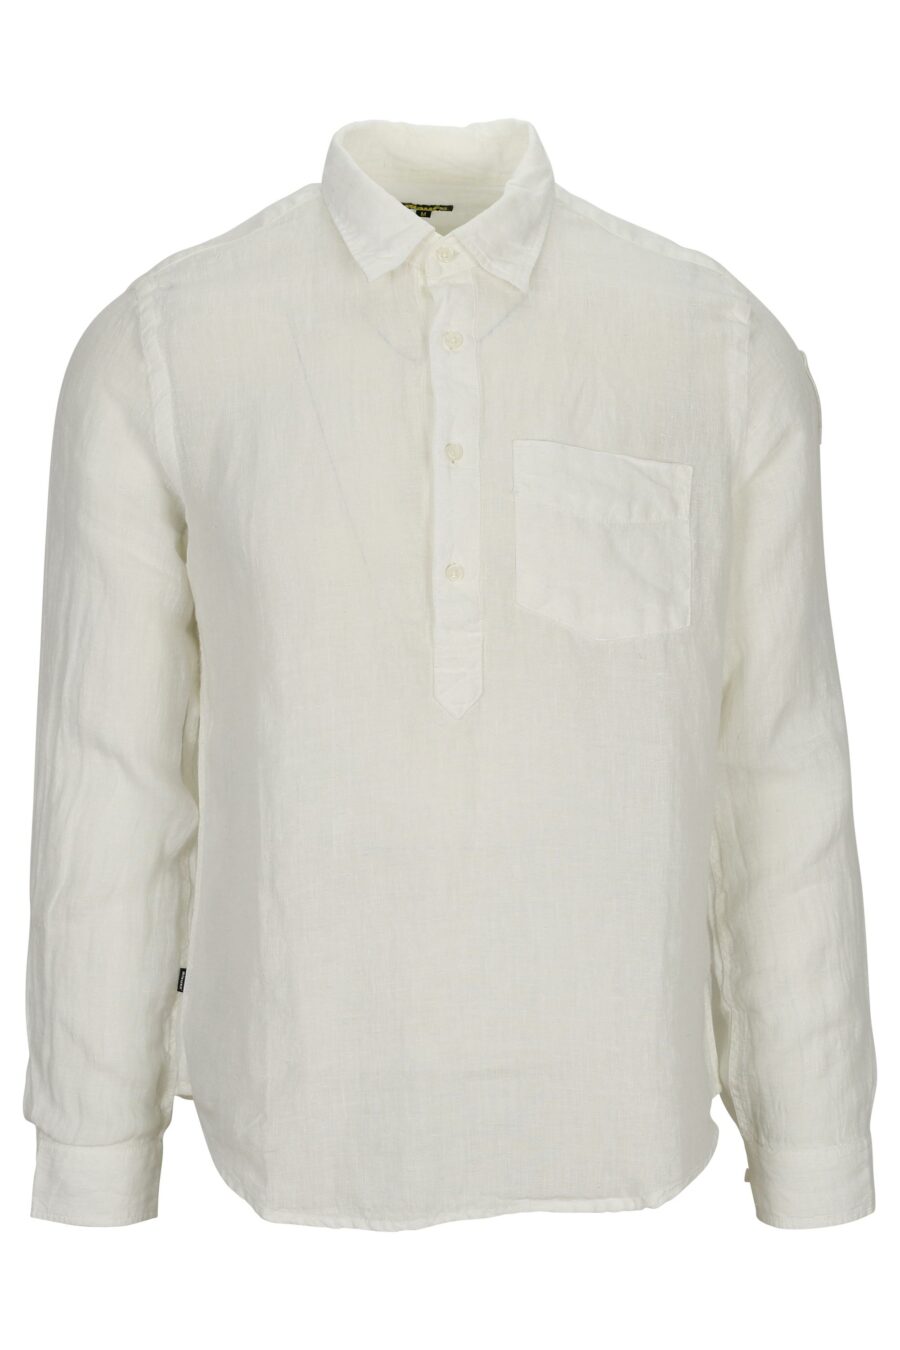 Camisa blanca con minilogo escudo - 8058610776718